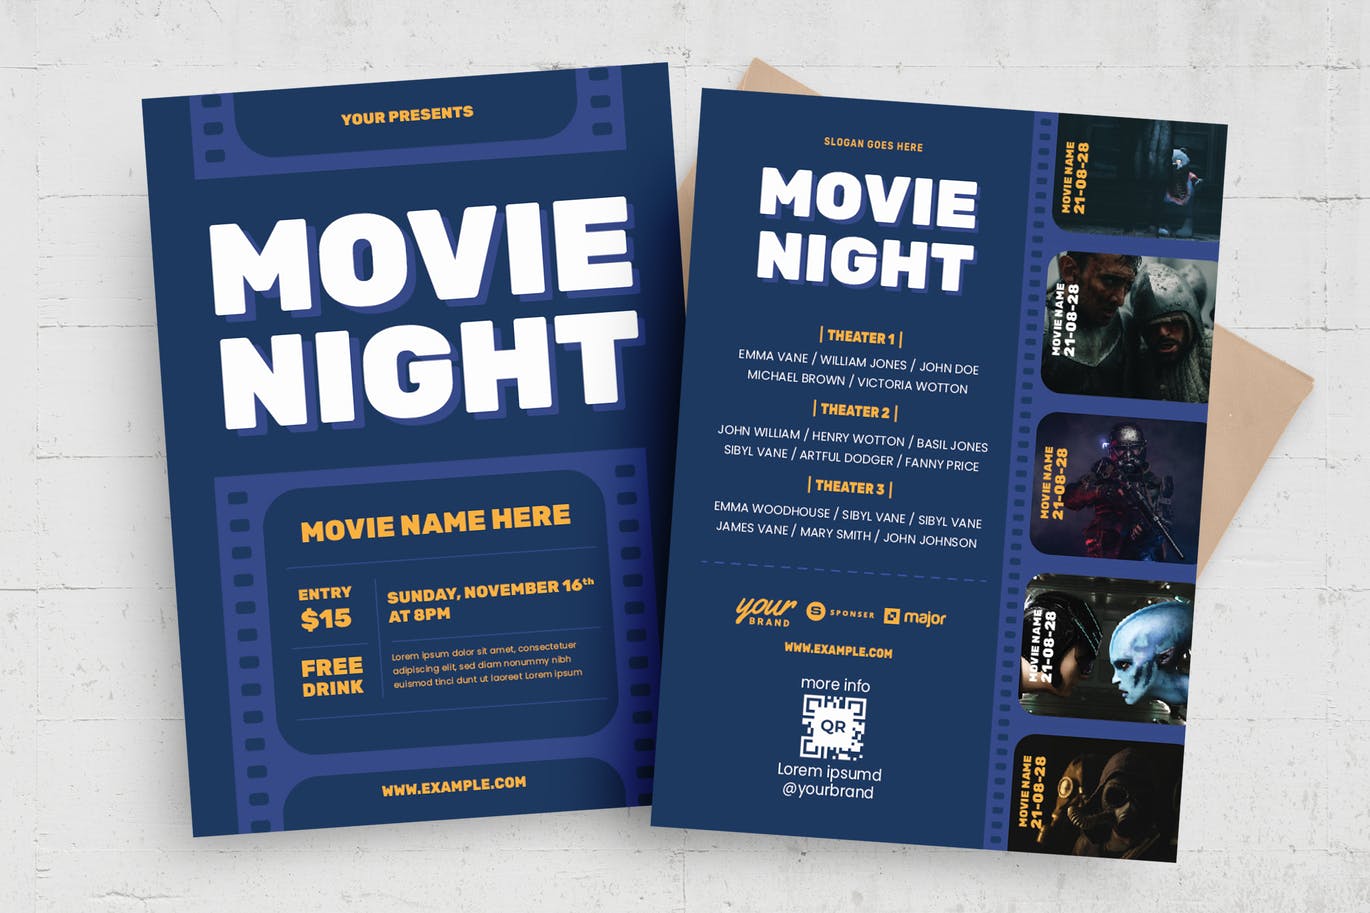 电影之夜传单设计模板 Movie Night Flyer Template 设计素材 第1张